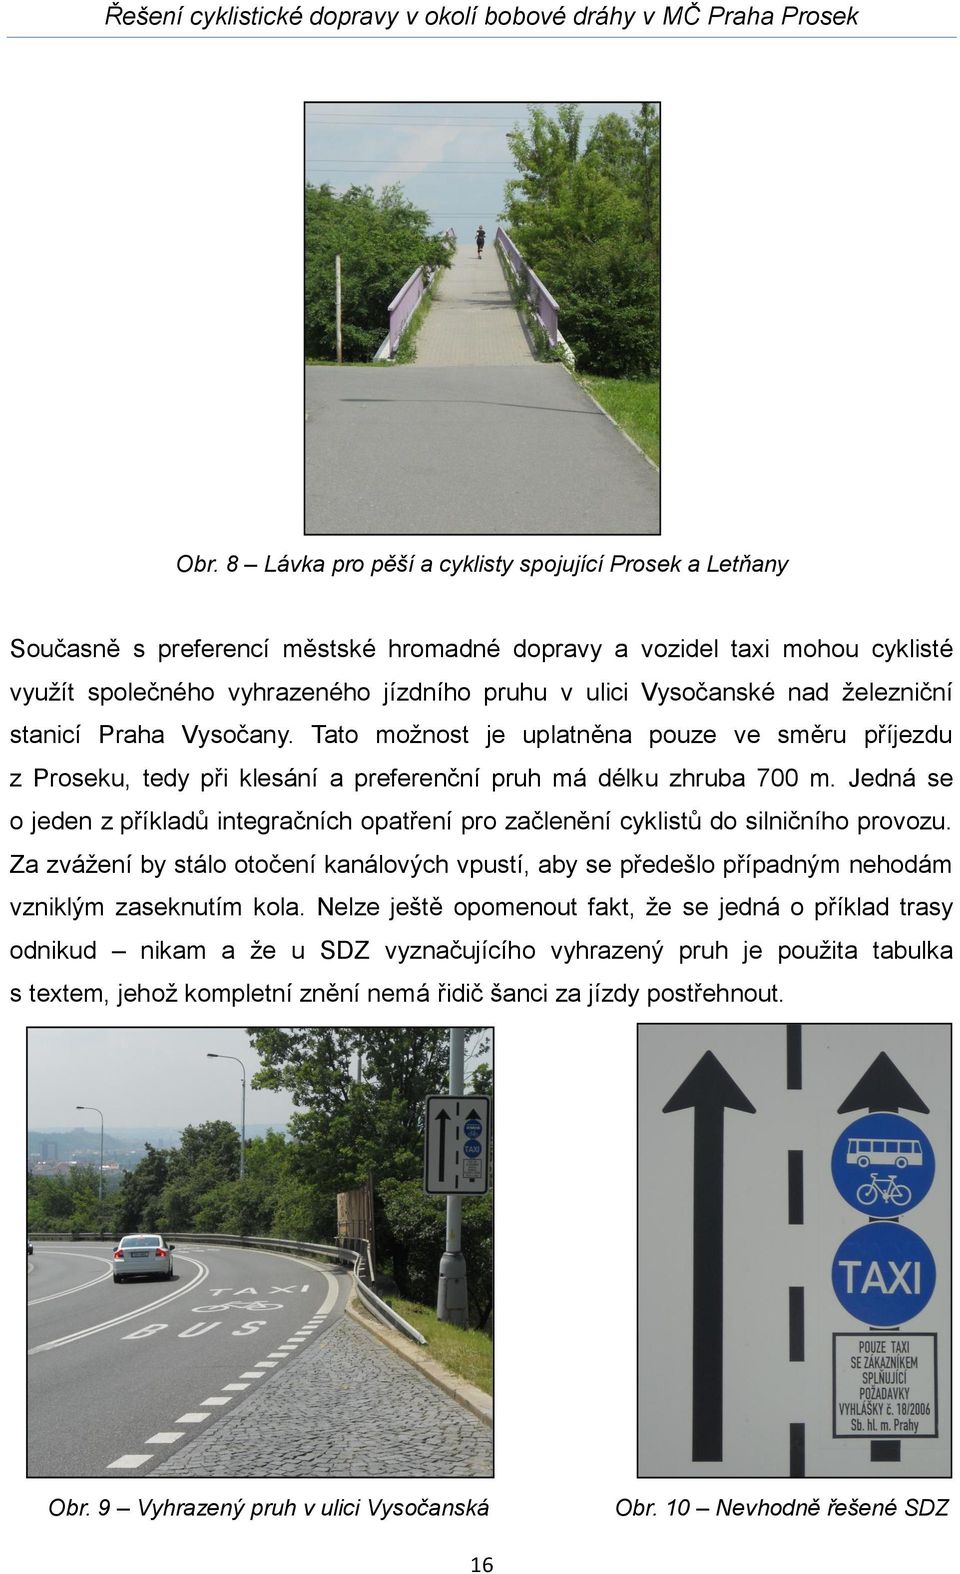 Jedná se o jeden z příkladů integračních opatření pro začlenění cyklistů do silničního provozu.